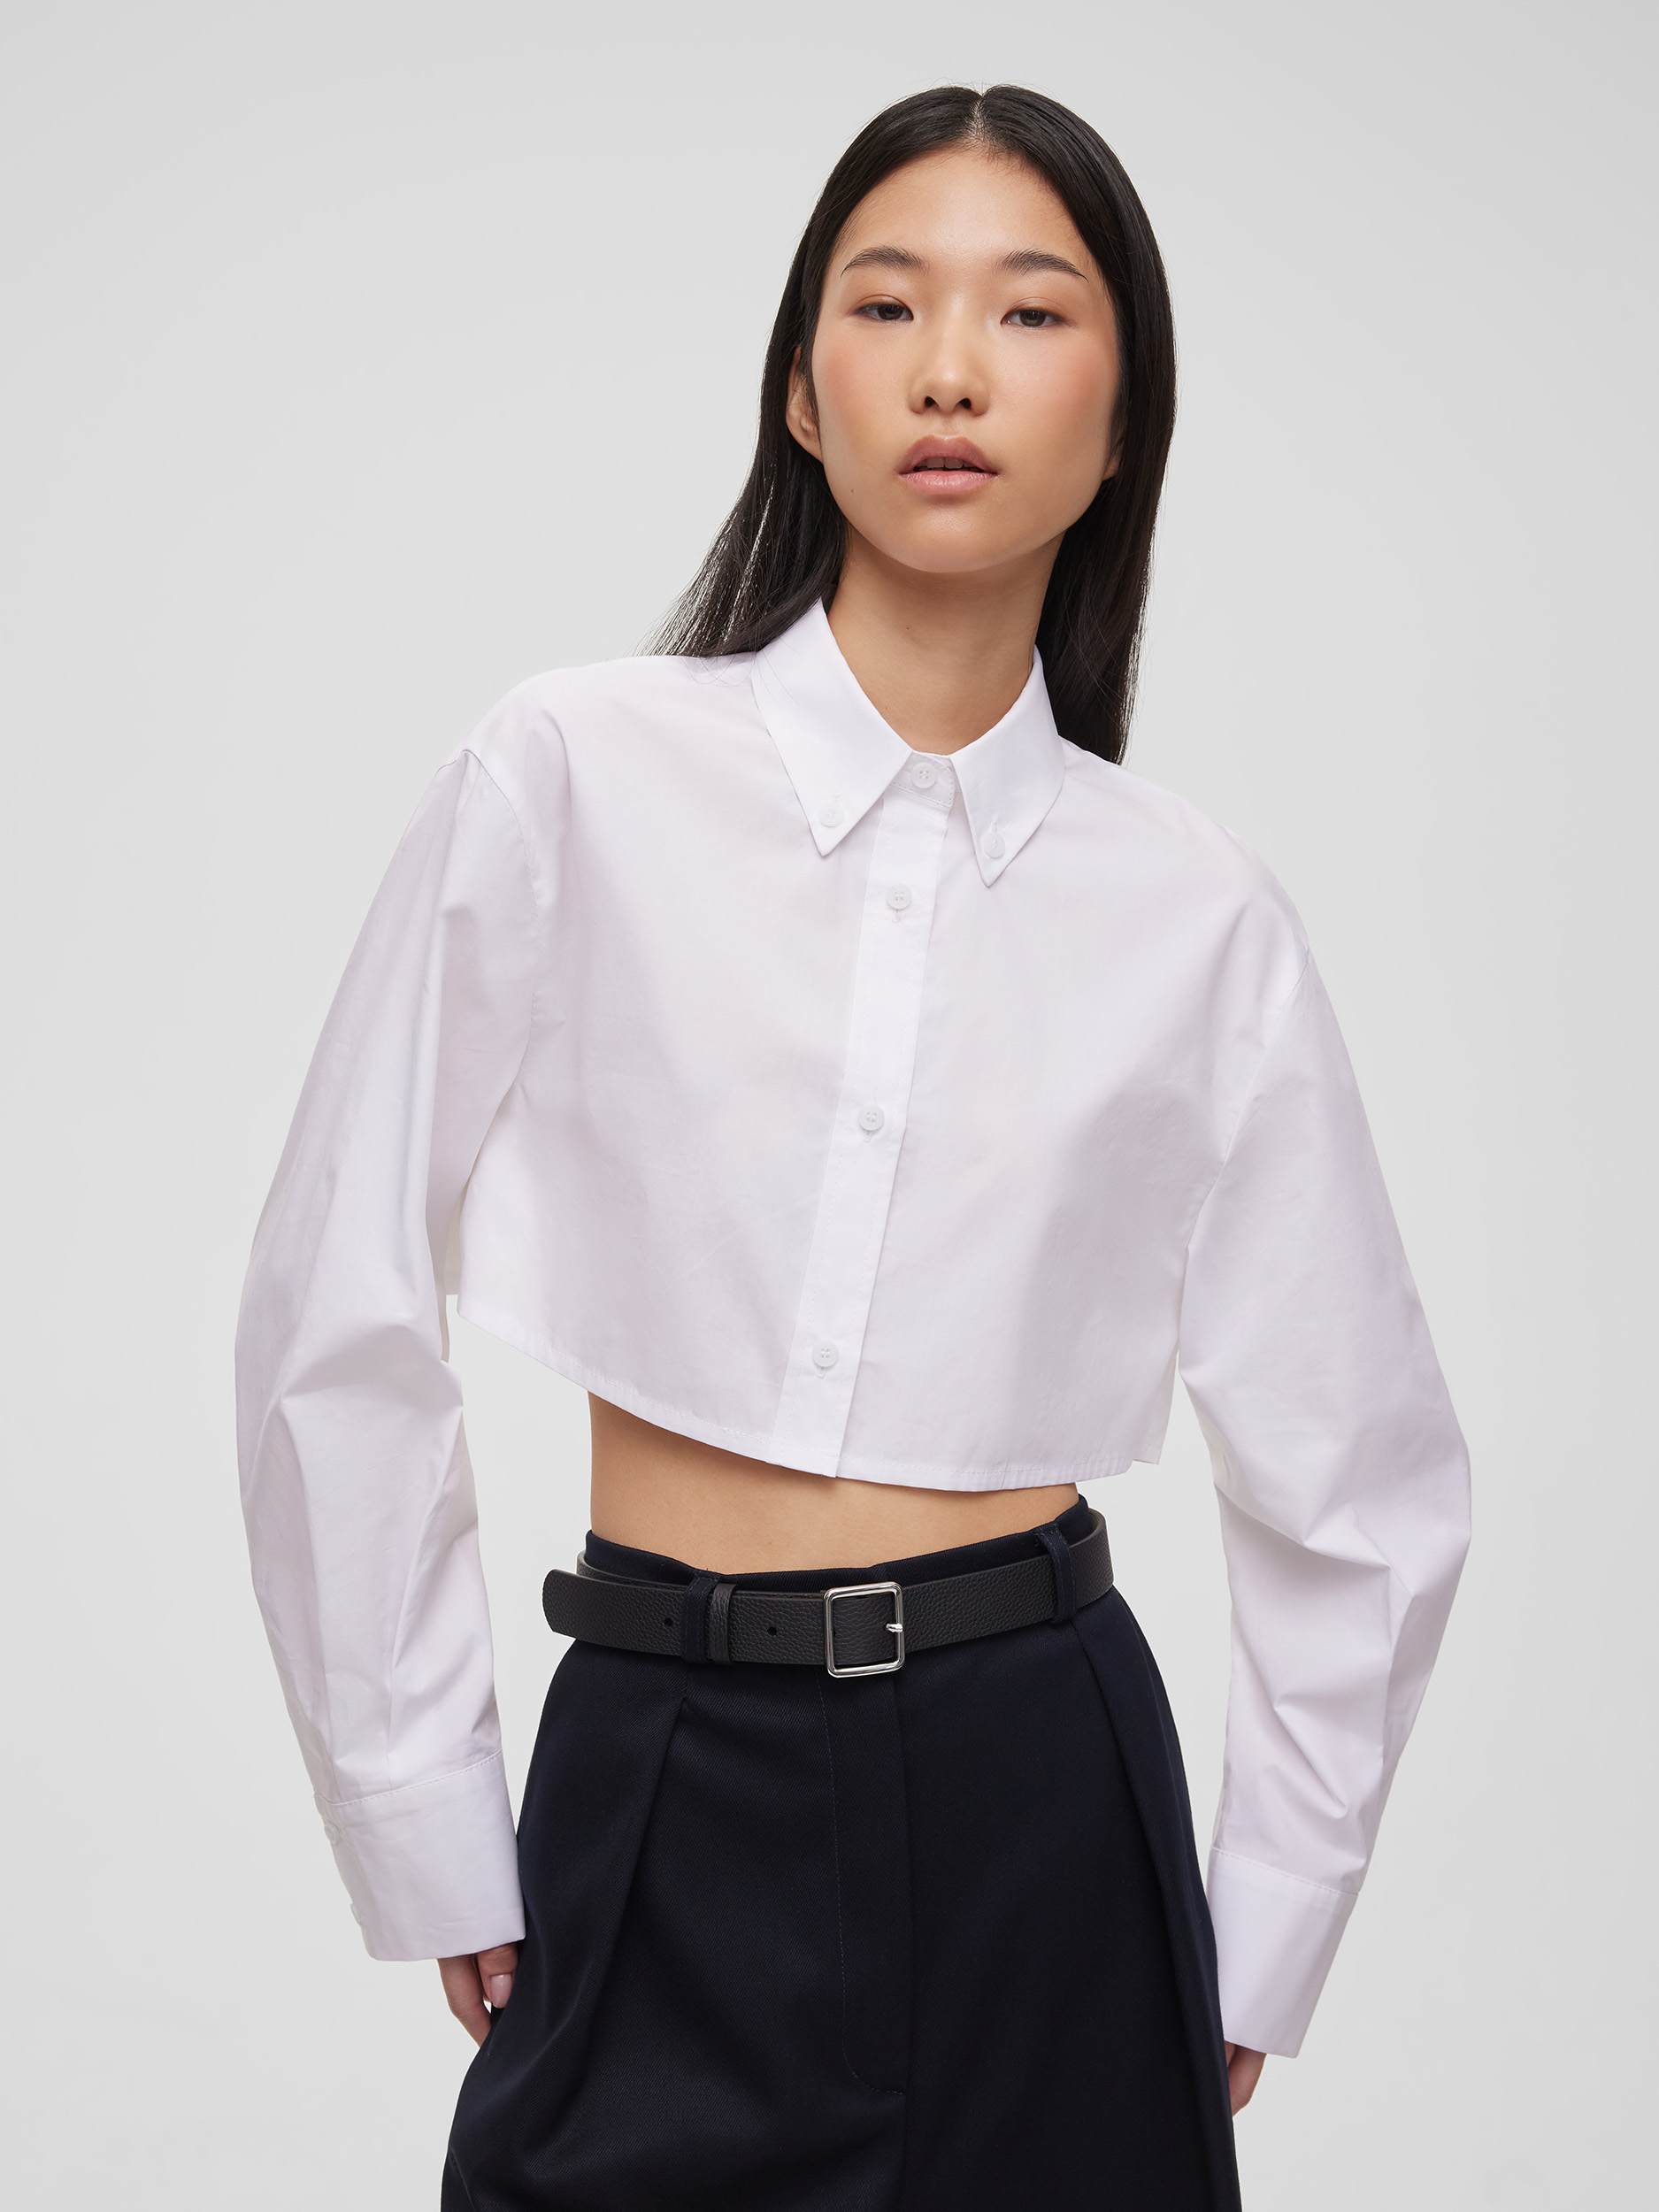 Рубашка женская короткая из хлопка, цвет – белый фото